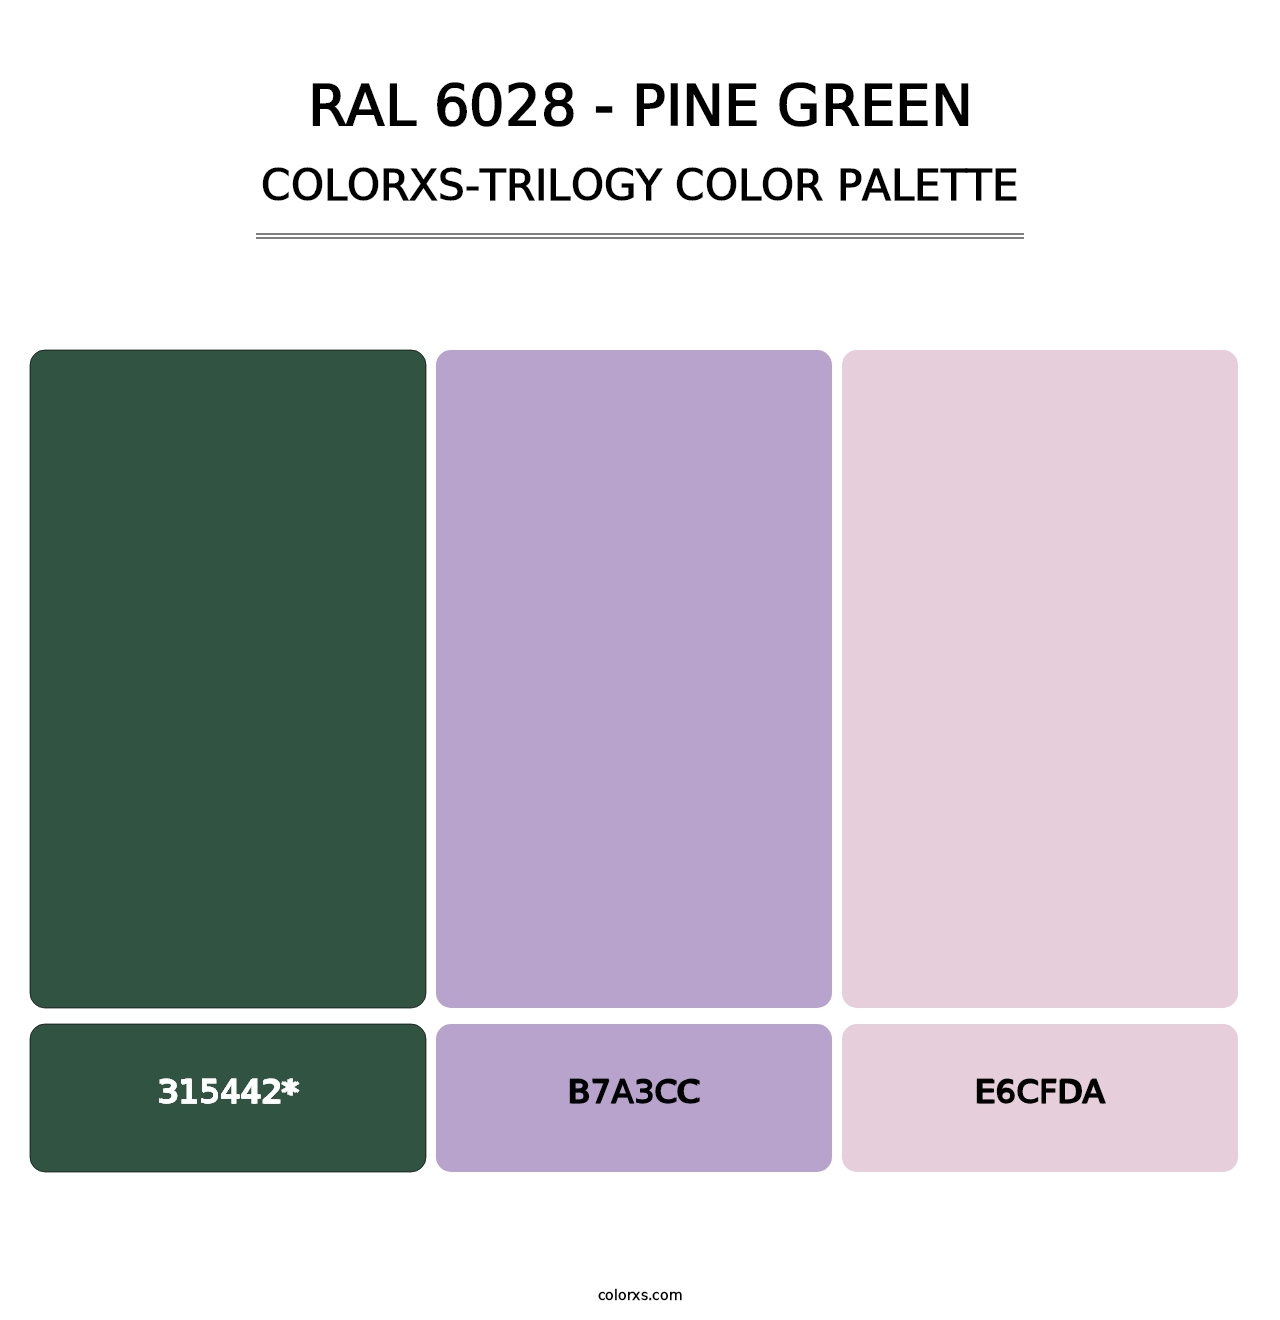 RAL 6028 - Pine Green - Colorxs Trilogy Palette